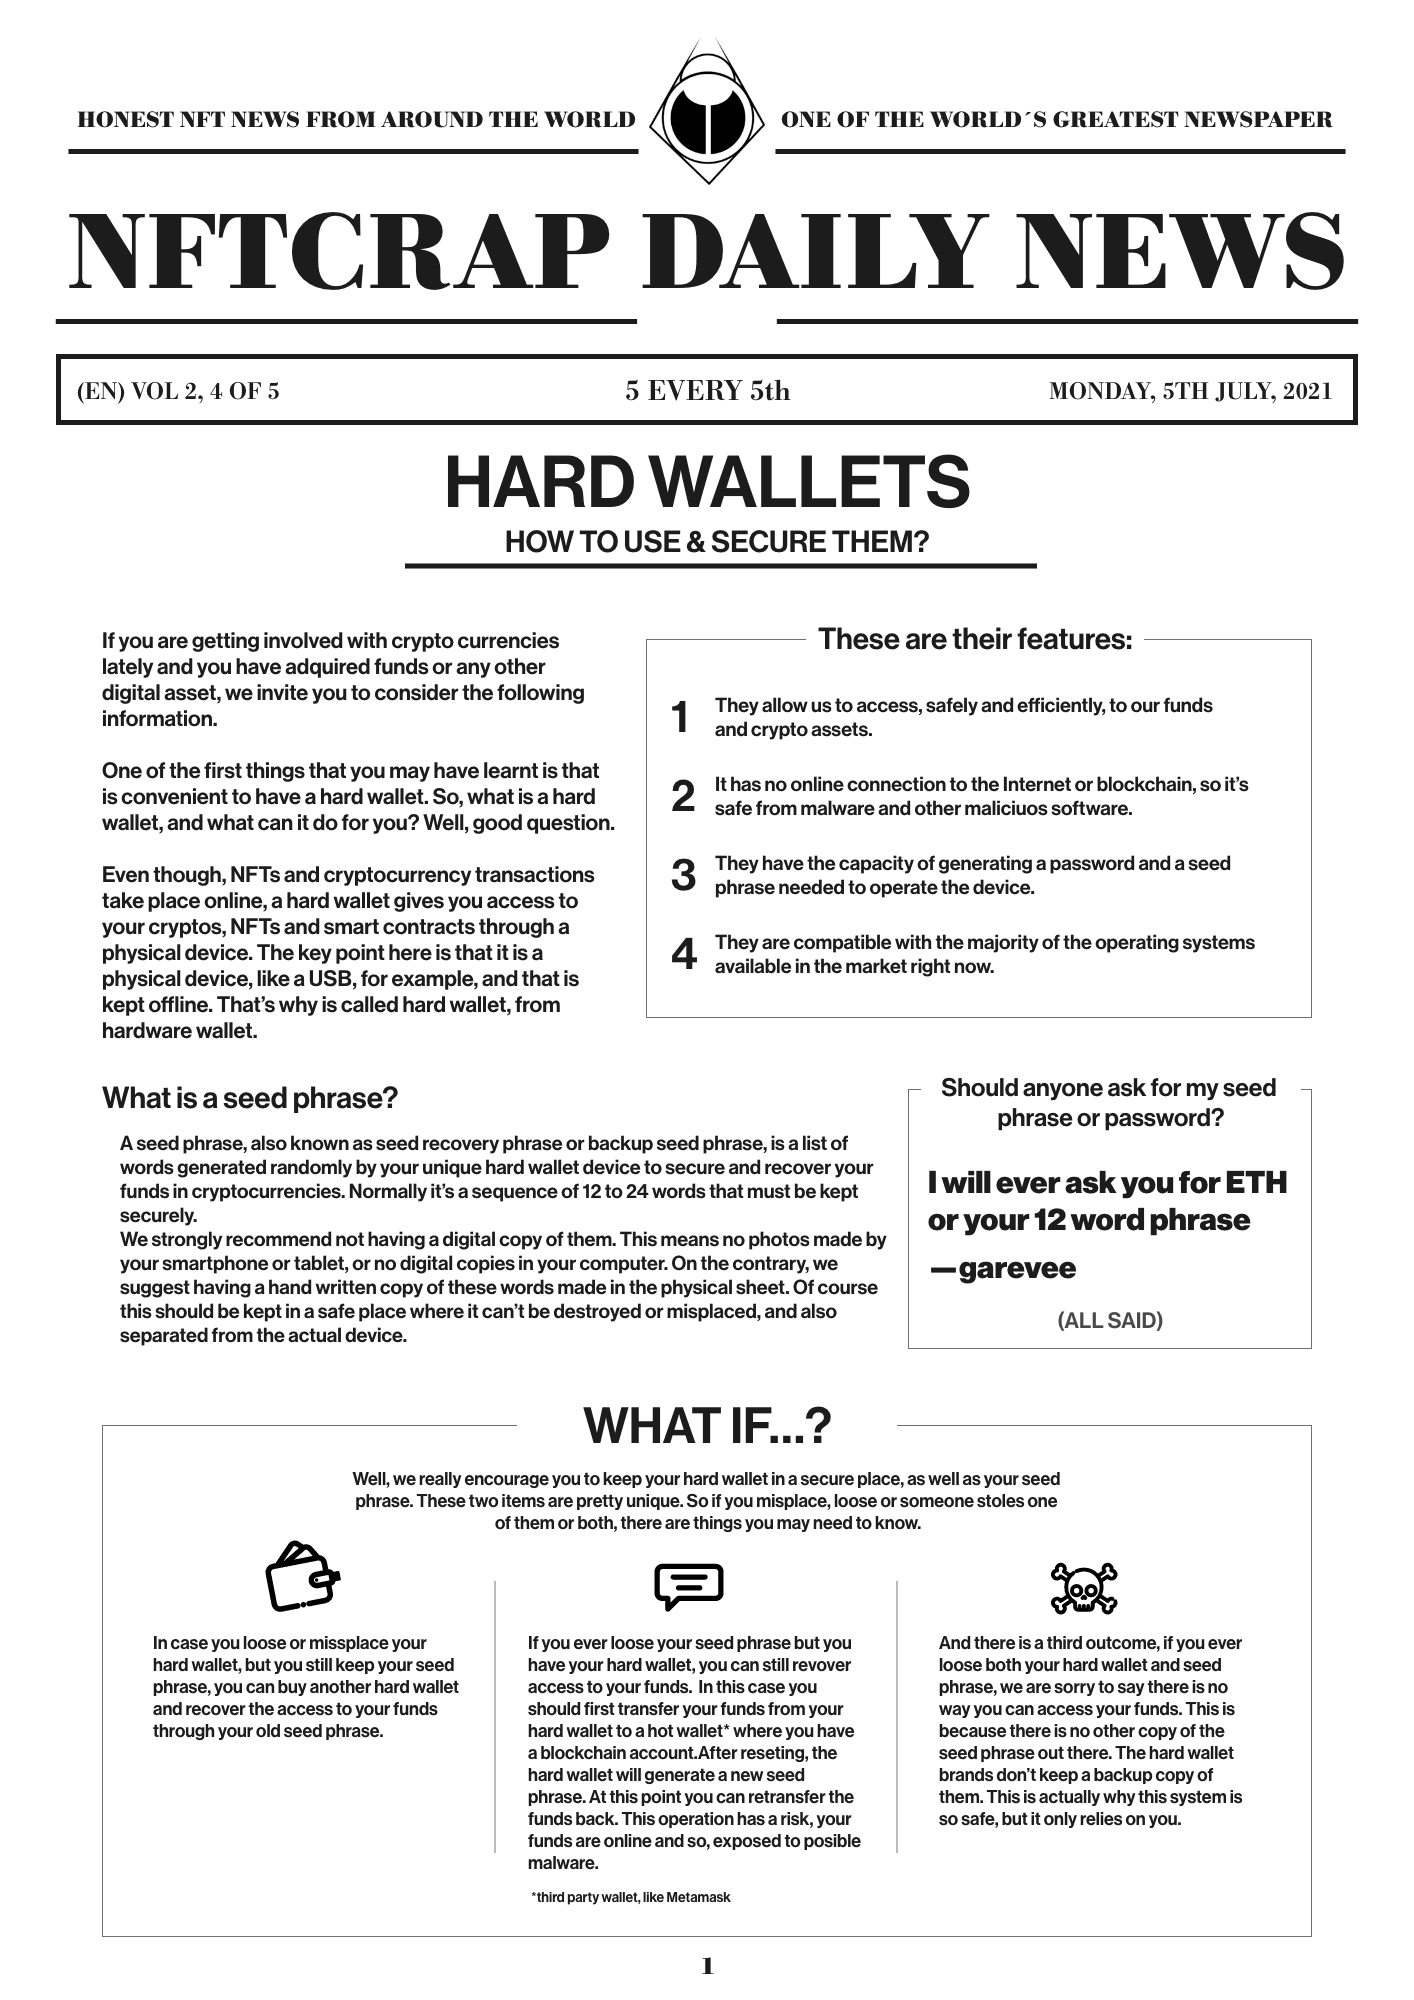 Hard Wallets (EN) #4/5